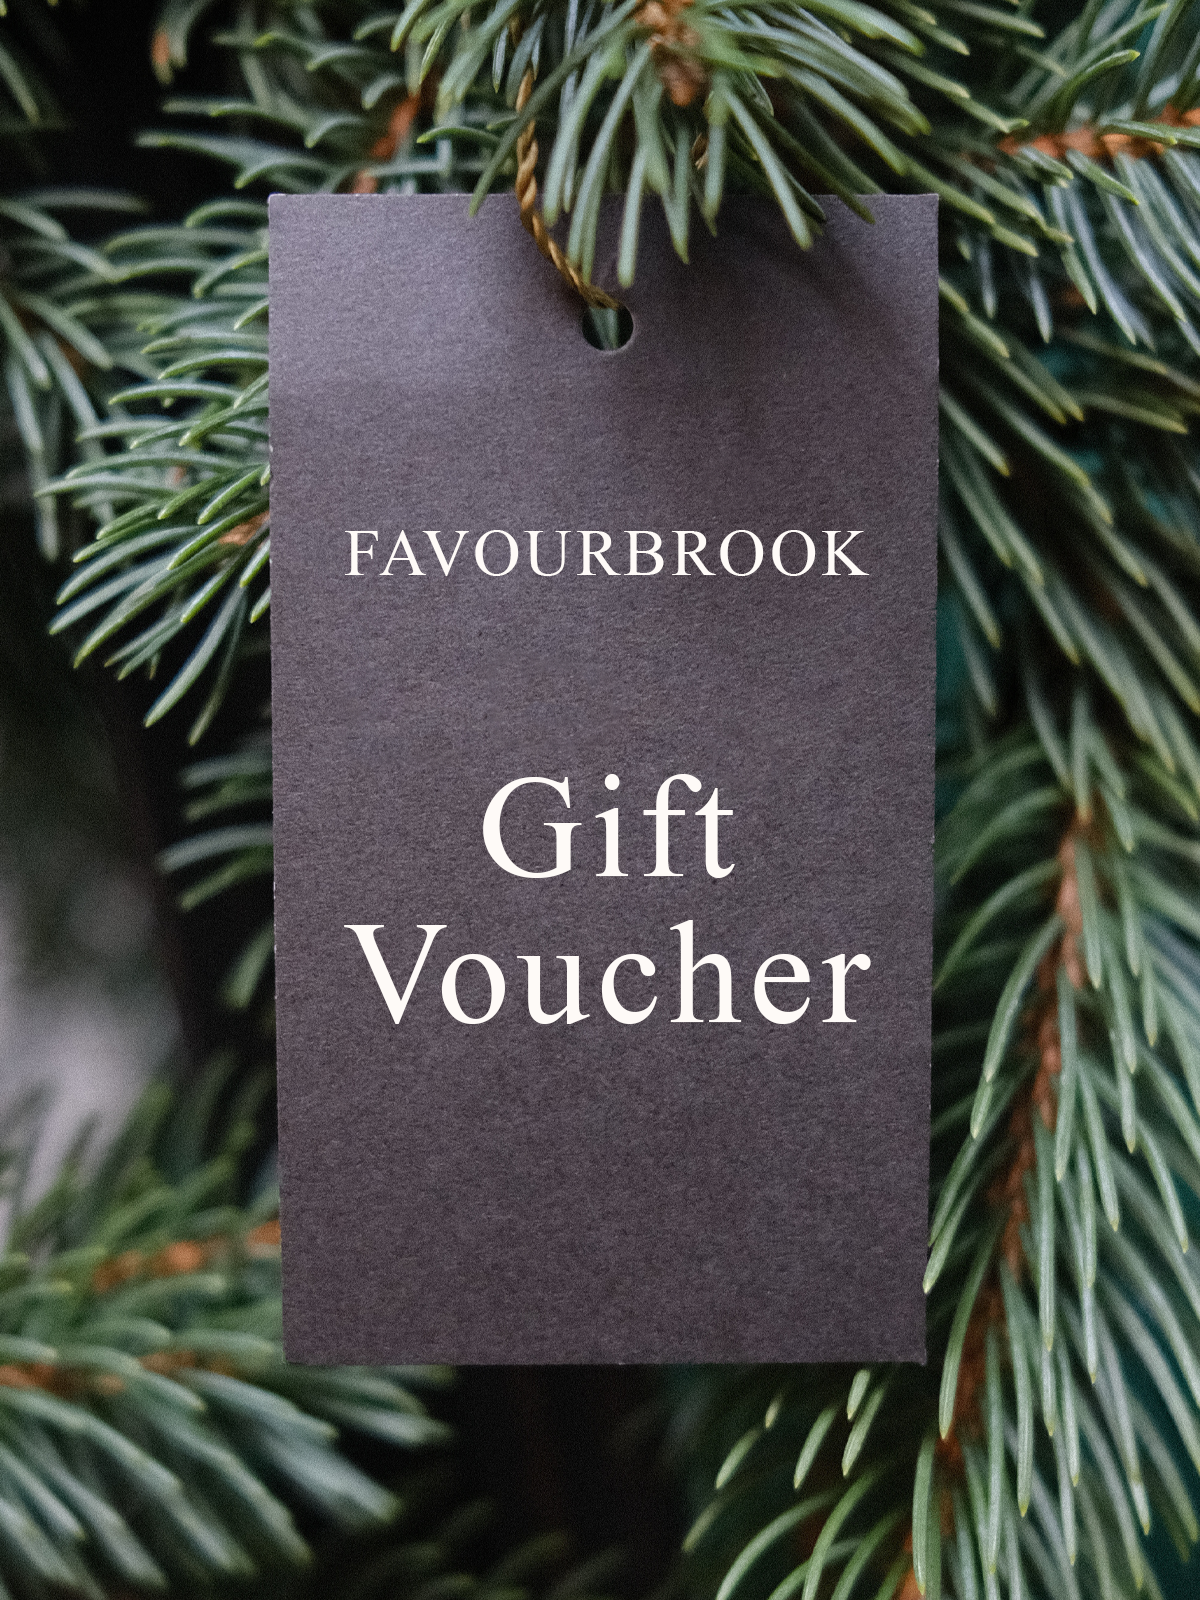 Favourbrook Gift Voucher